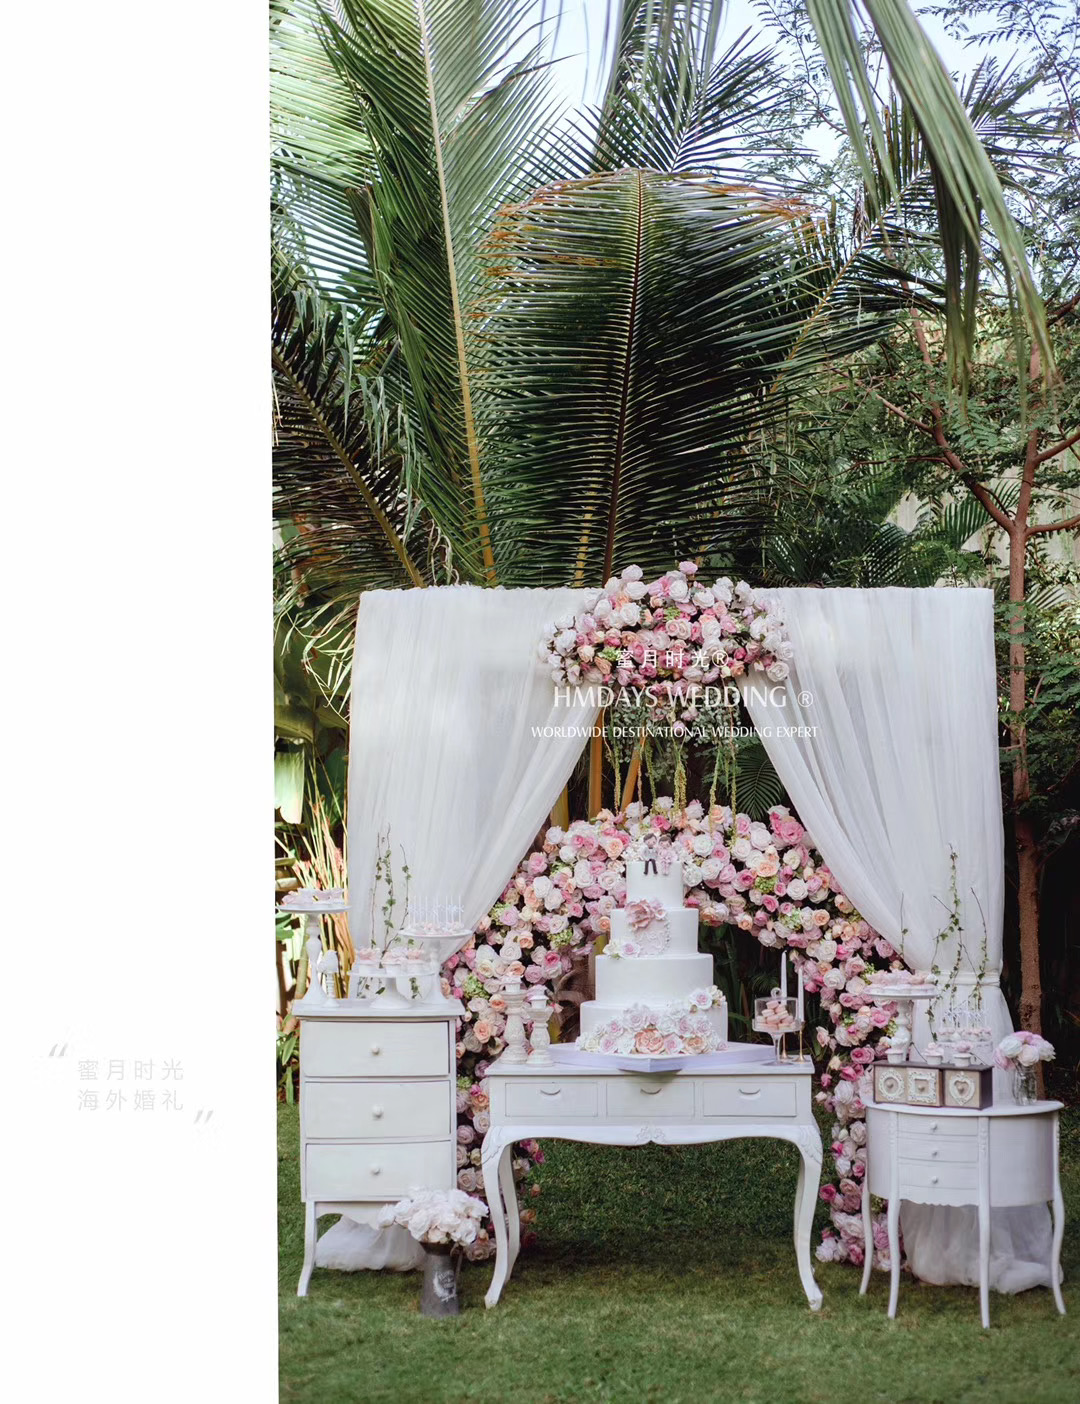 海外婚礼巴厘岛婚礼甜品台|海外婚礼定制中高端布置案例|巴厘岛婚礼布置定制案例